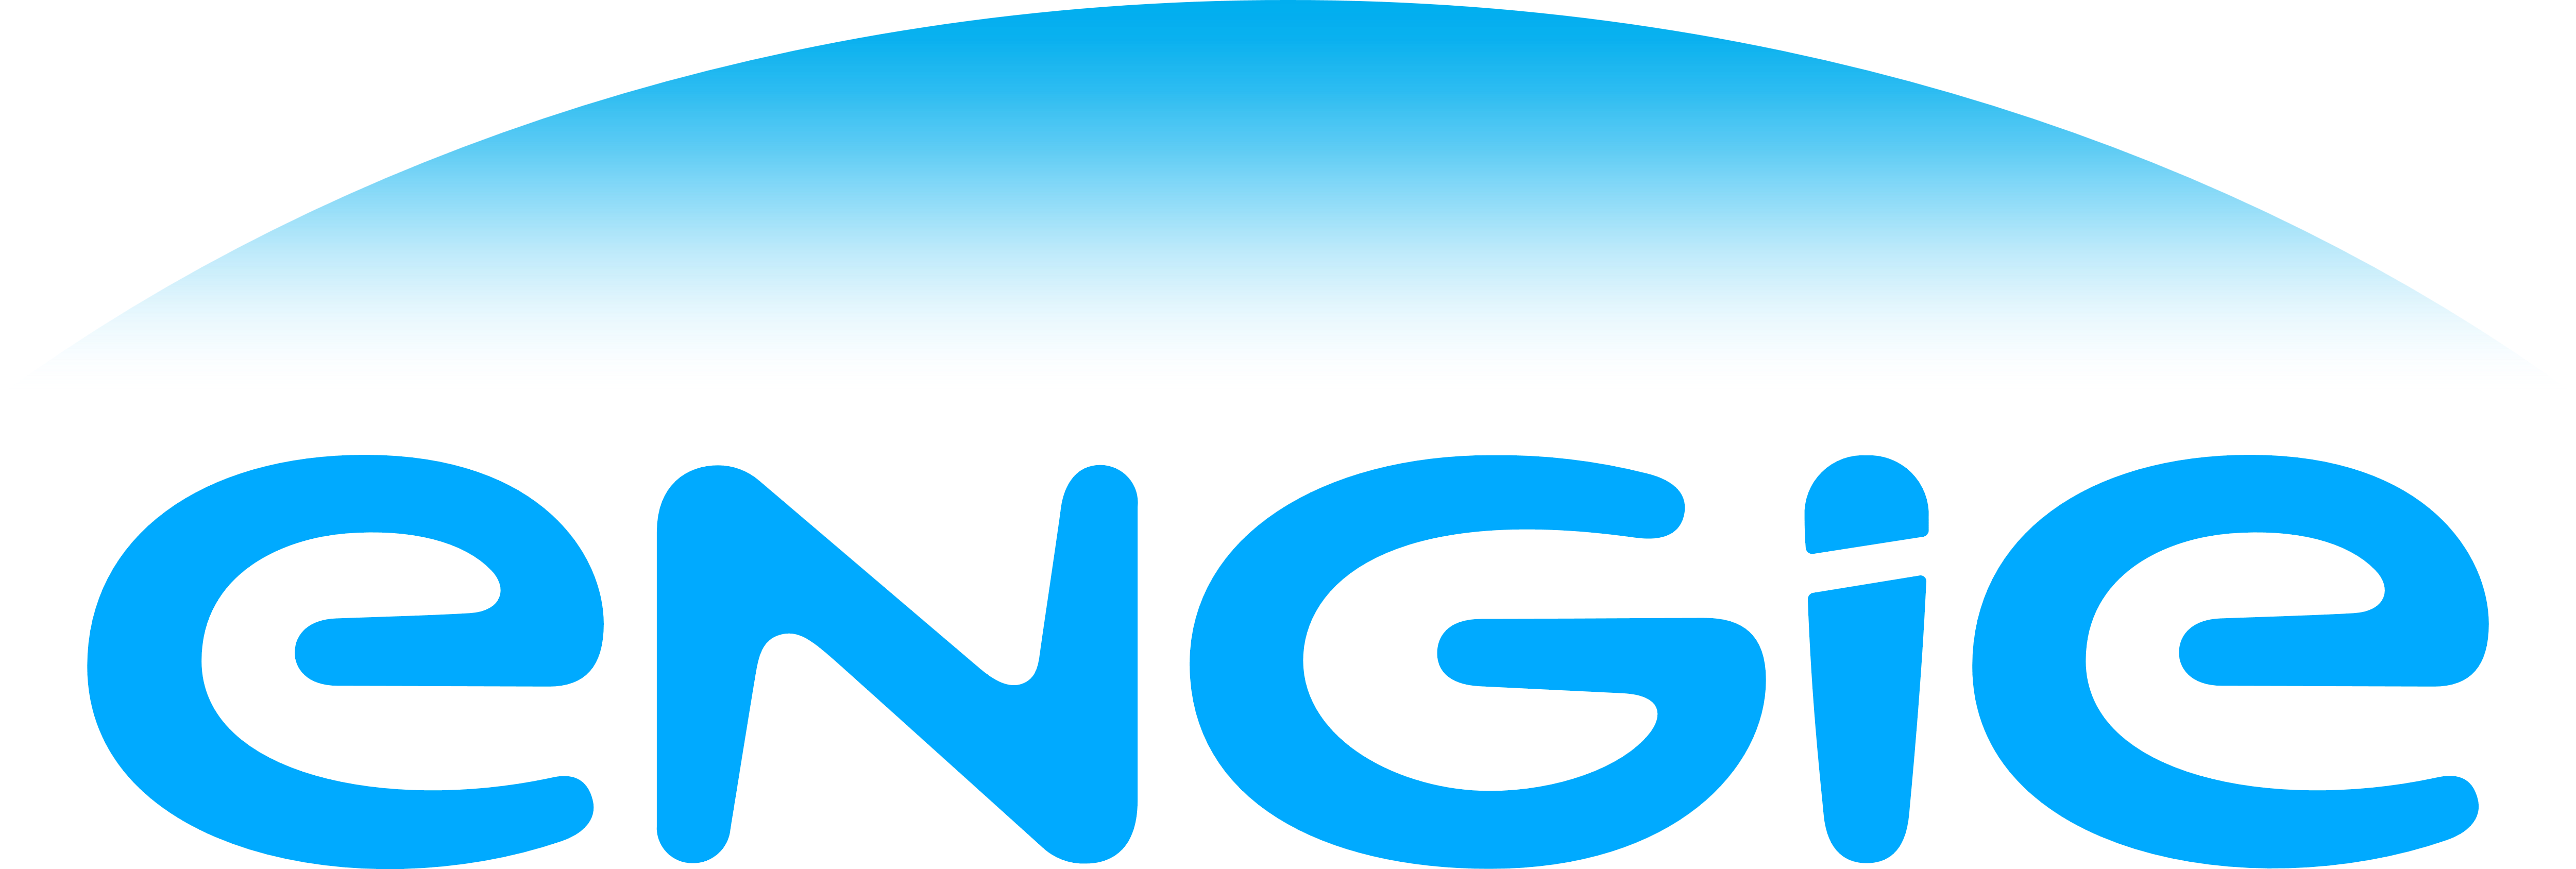 Engie – Logos Download